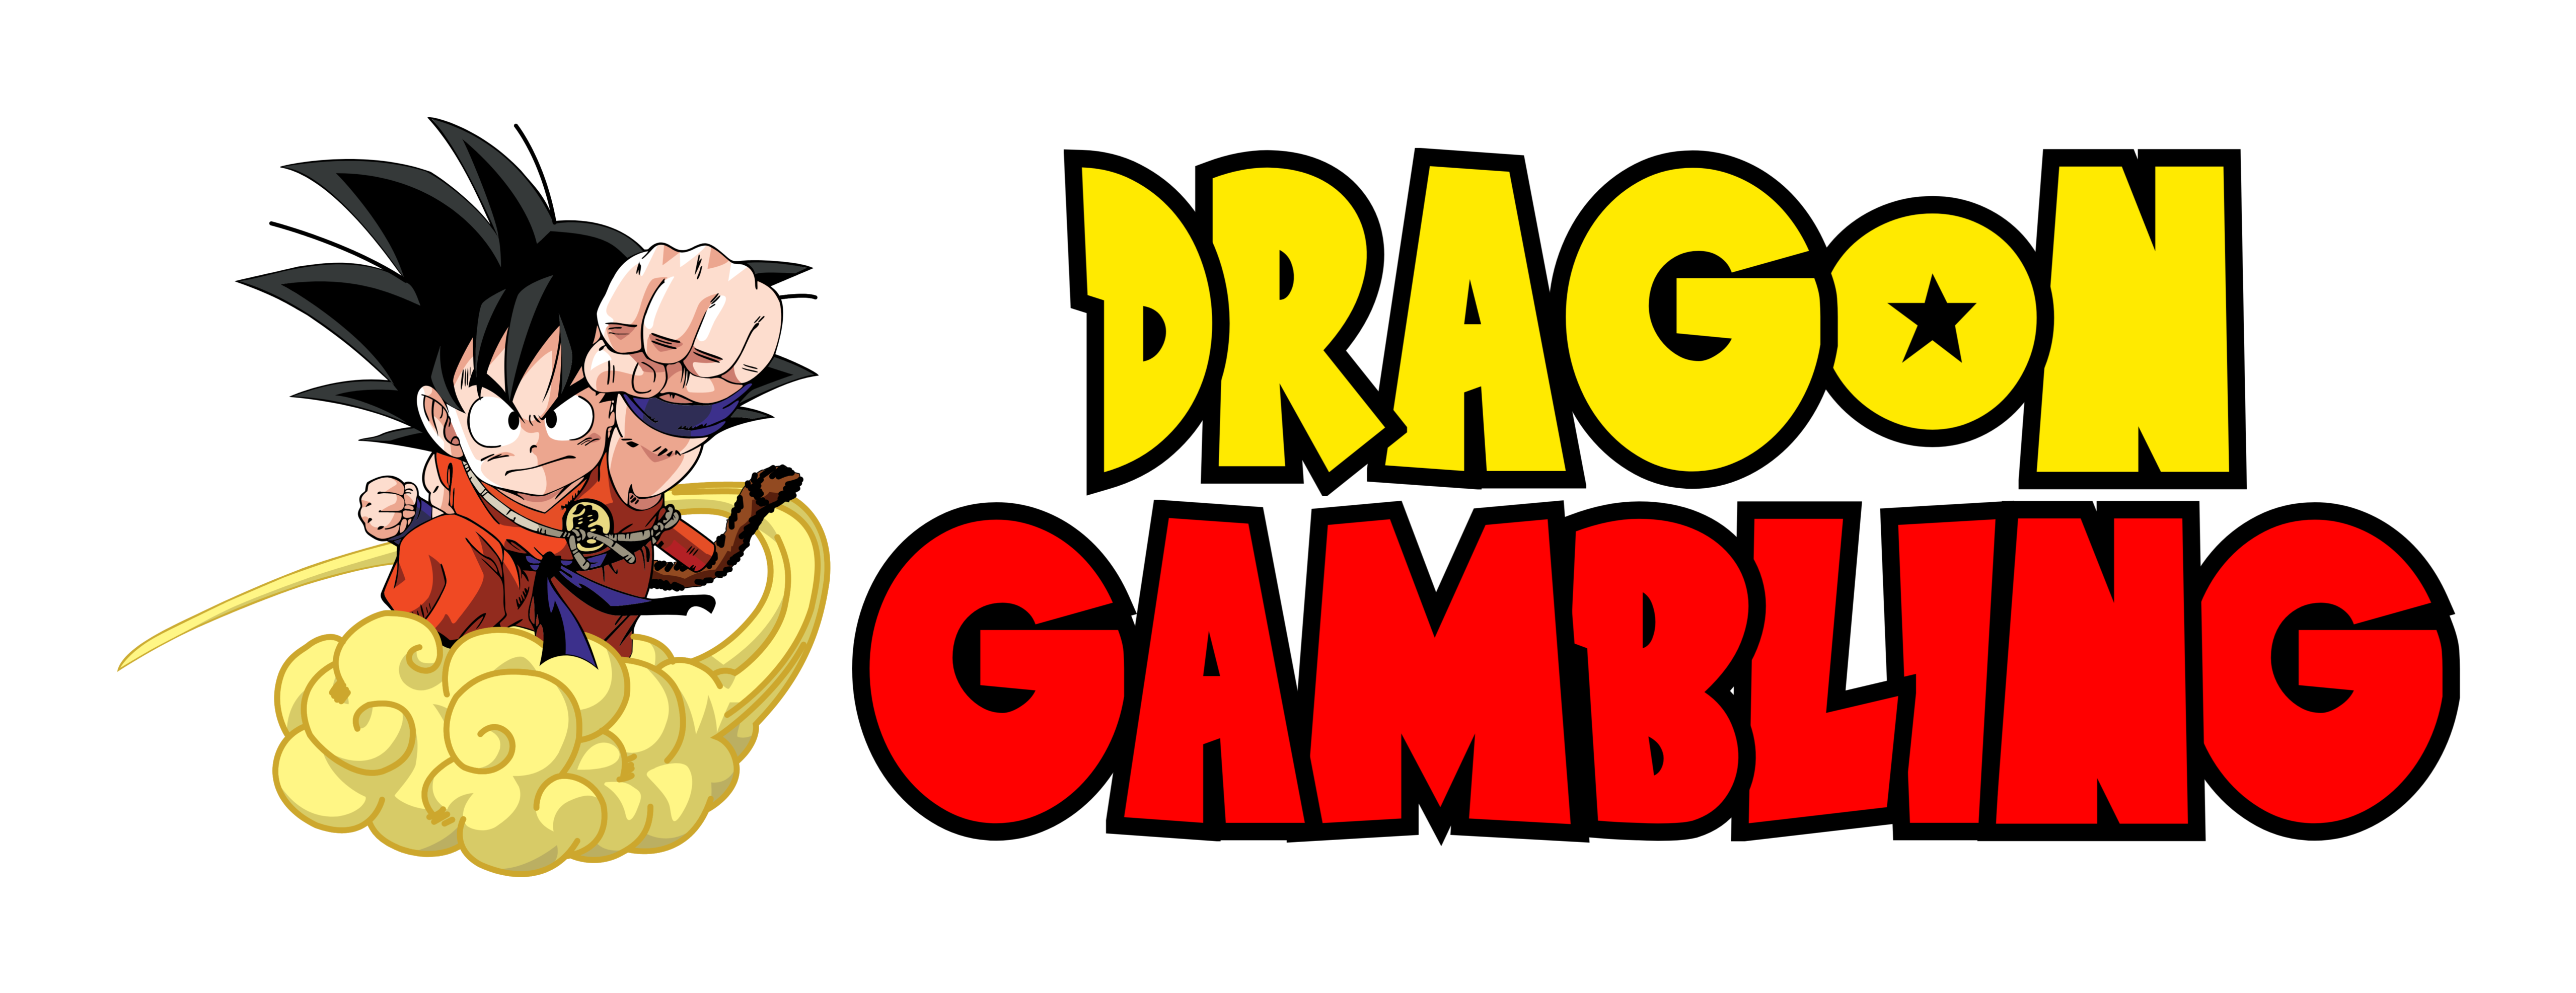 DRAGON GAMBLING